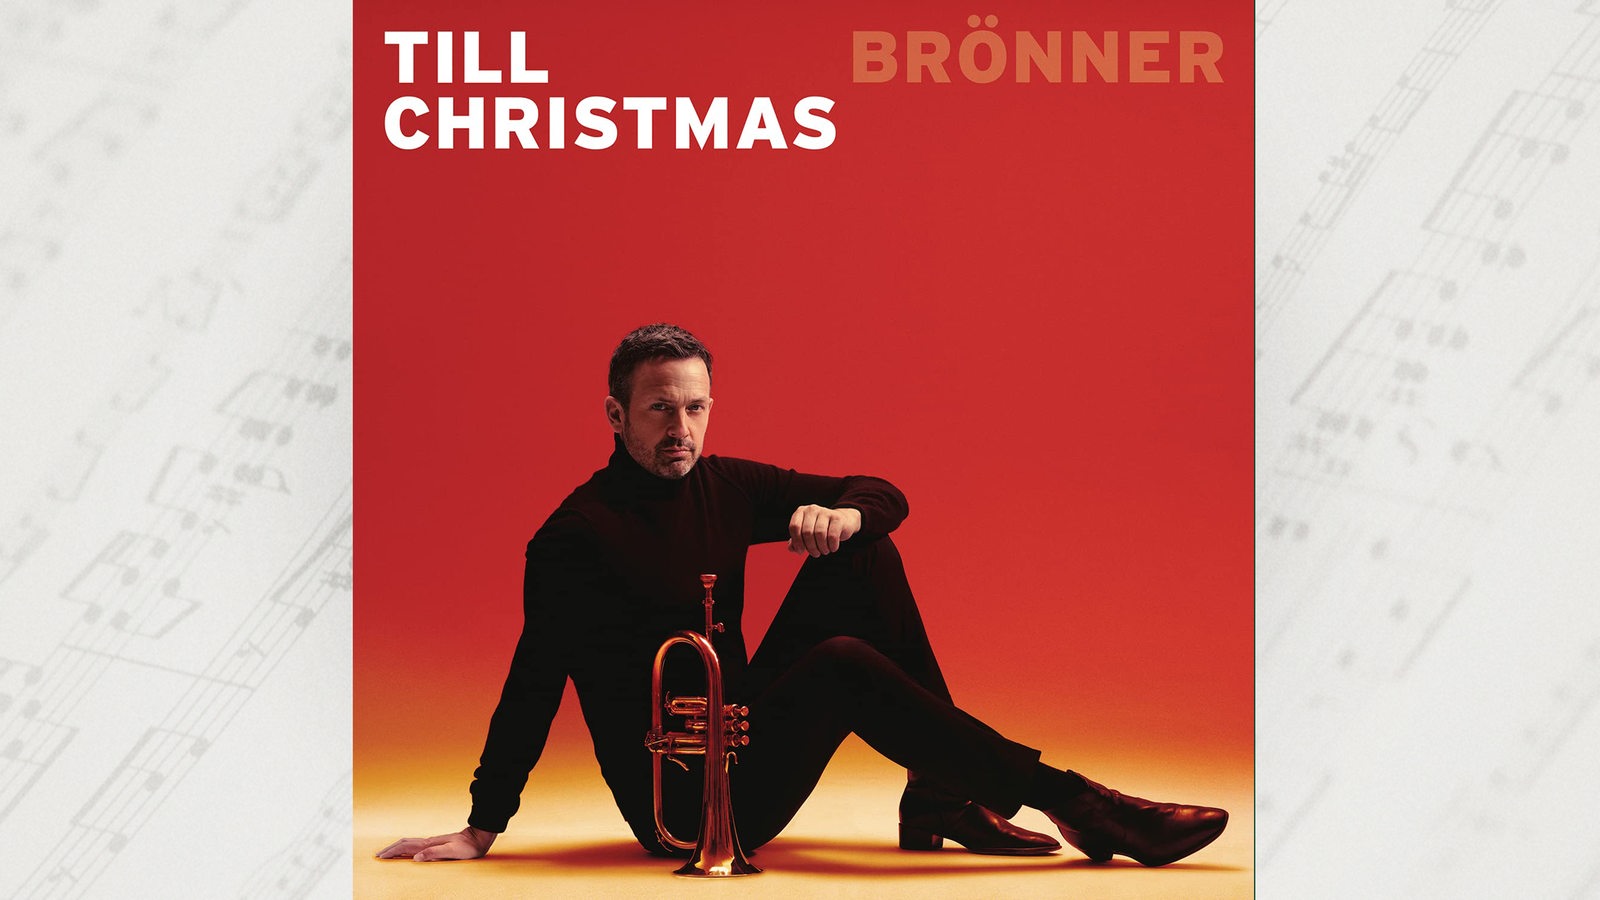 Albumcover von Till Brönner "Christmas"